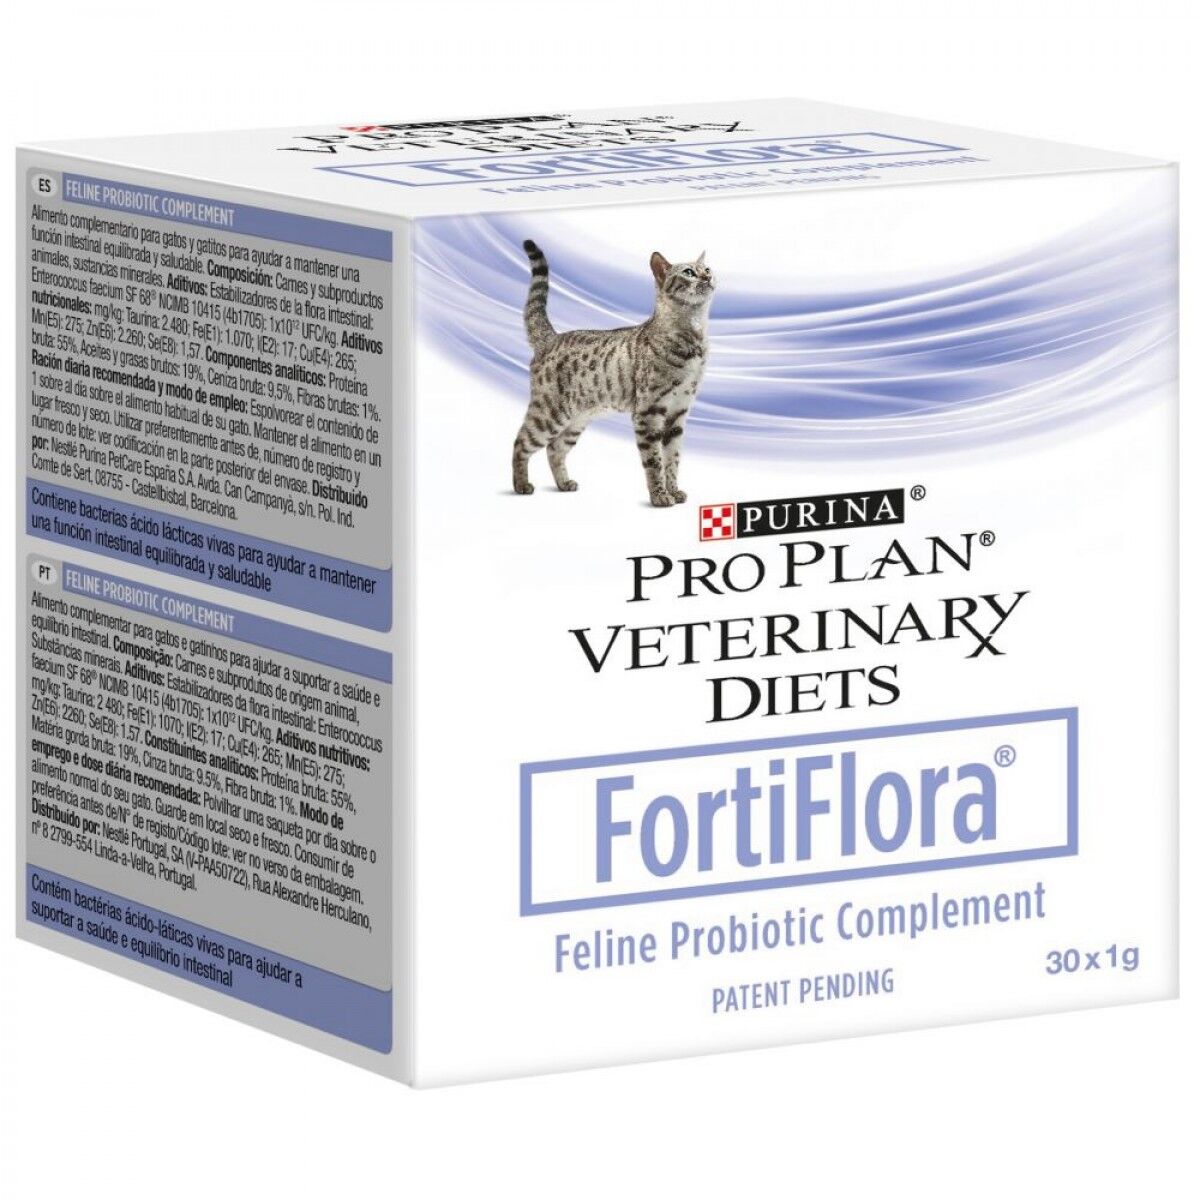 ПроПлан Fortiflora пробиотик д/к для микрофлоры кишечника 30п. по 1г